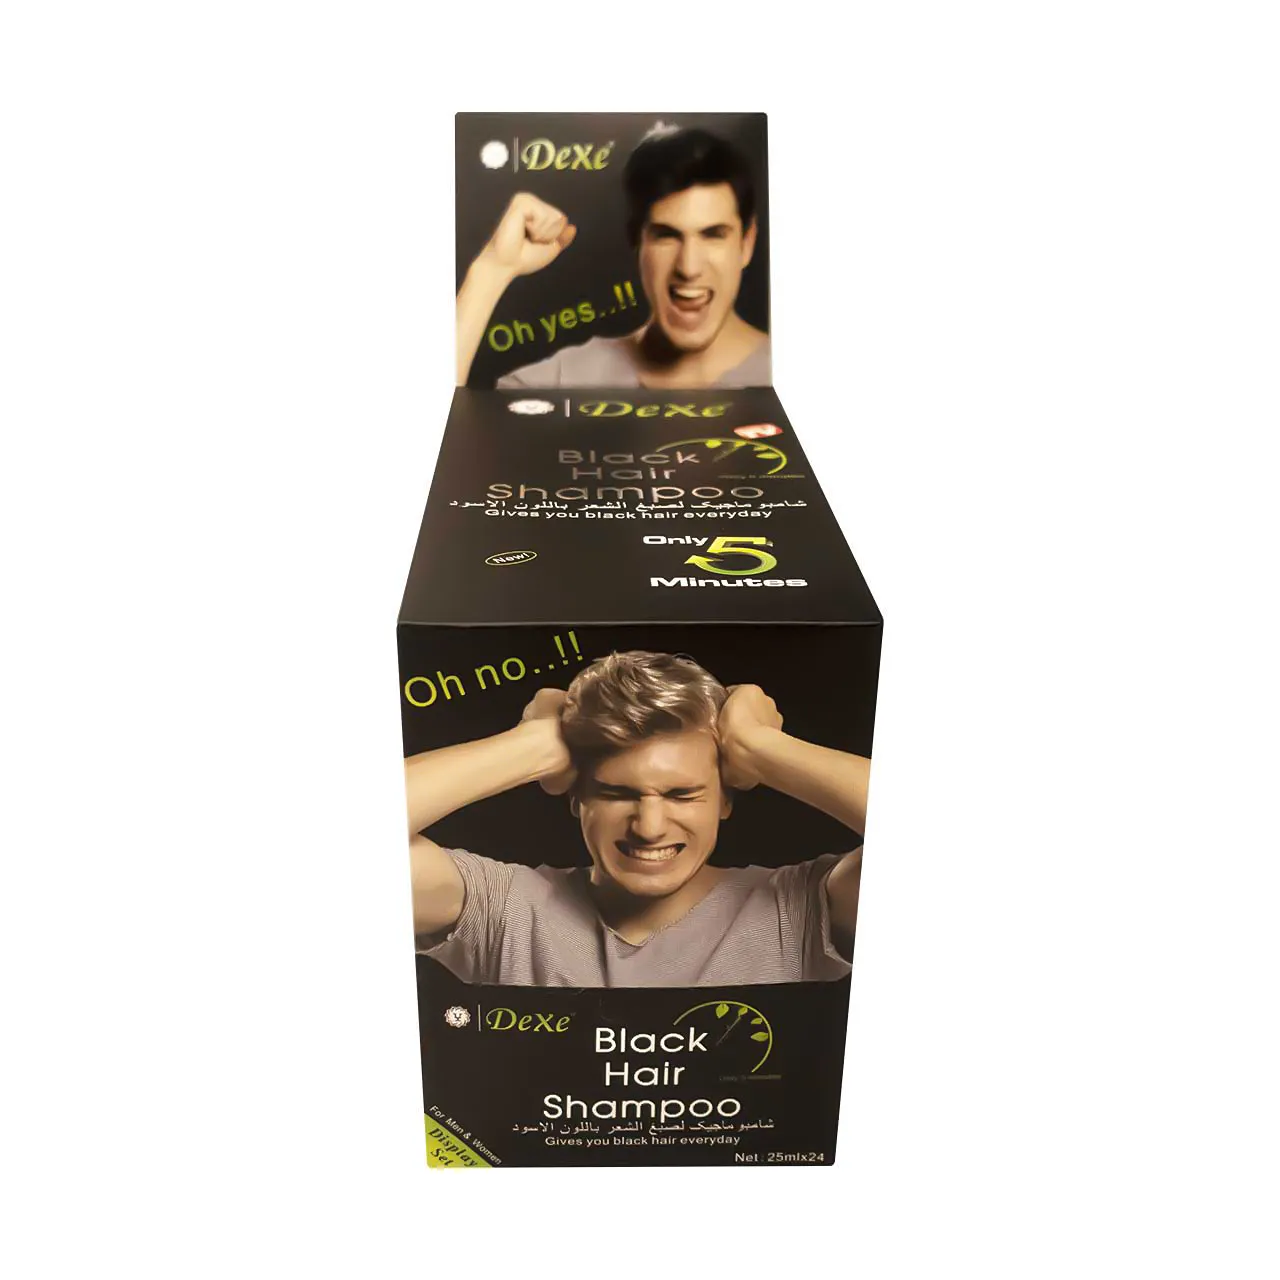 Dexe Black Hair Shampoo (24 Sachets of 25ml)